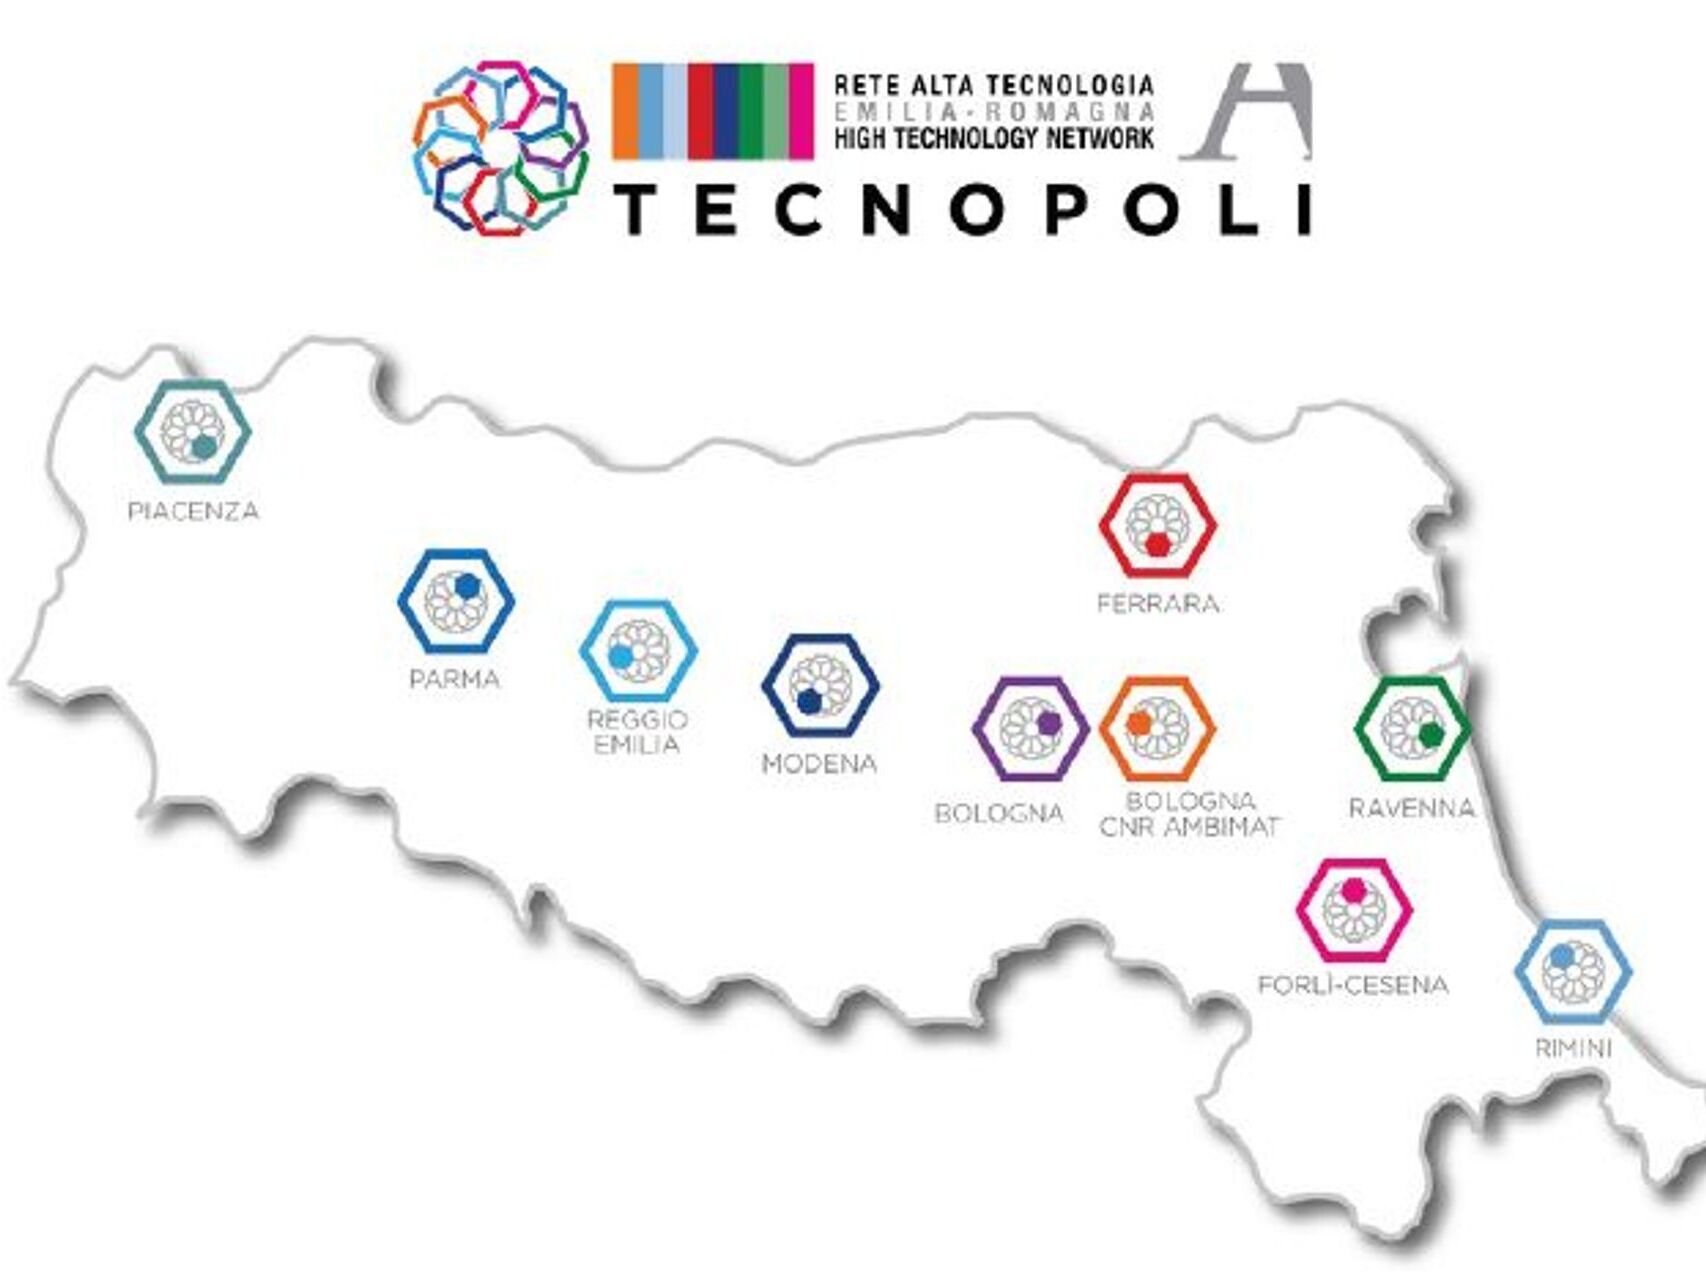 Високотехнологичната мрежа на регион Емилия-Романя